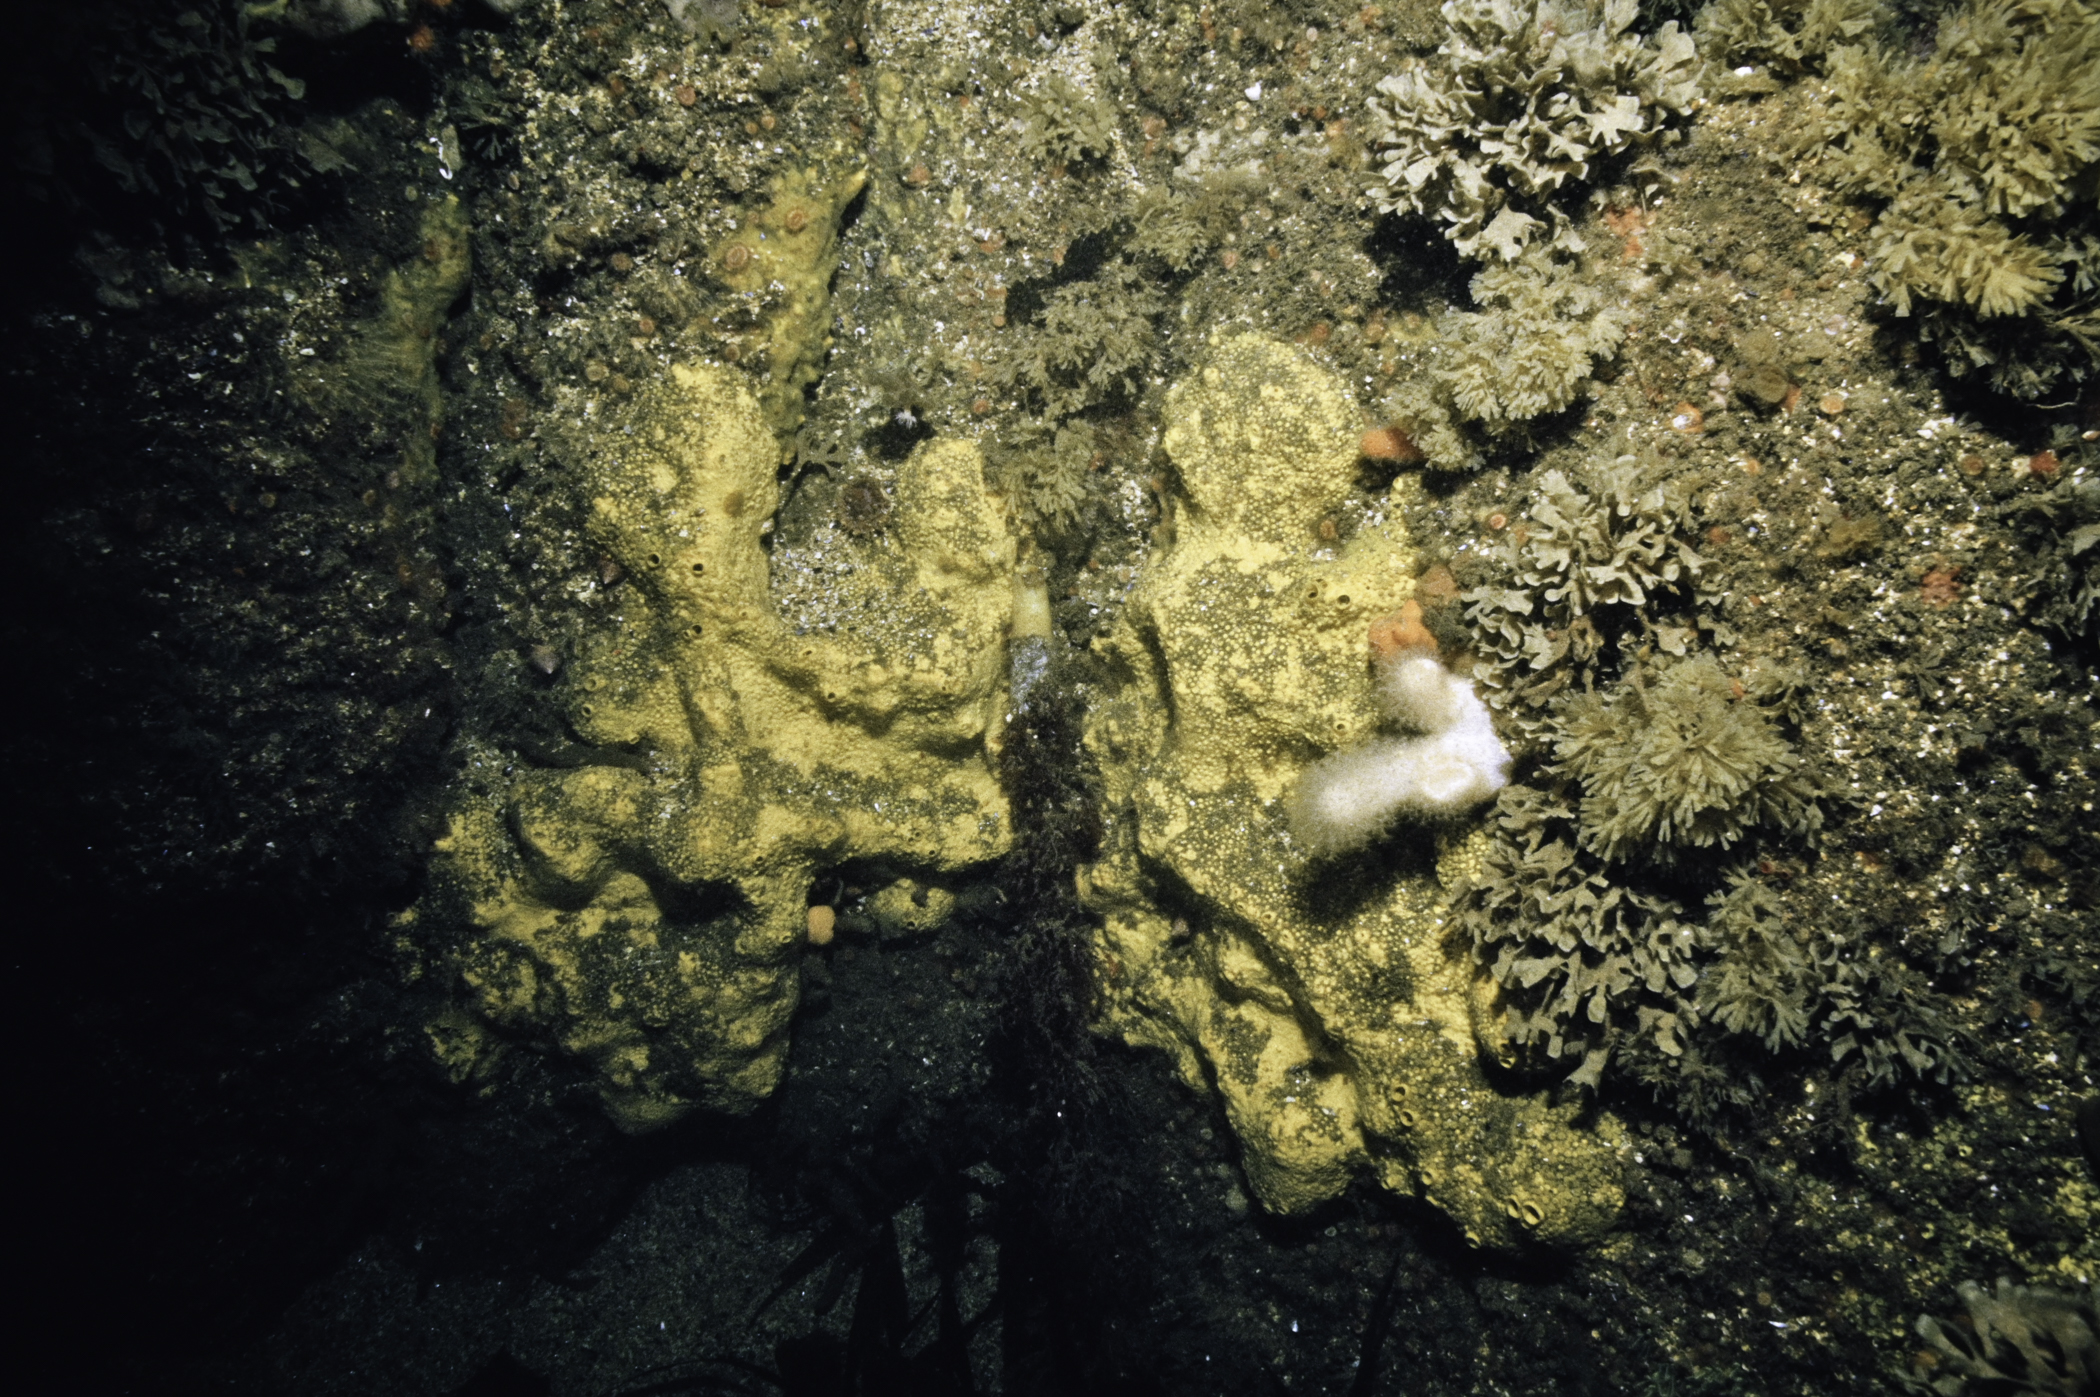 Cliona celata, Flustra foliacea, Securiflustra securifrons. Site: NW Otter Rocks, Skerries, Portrush. 